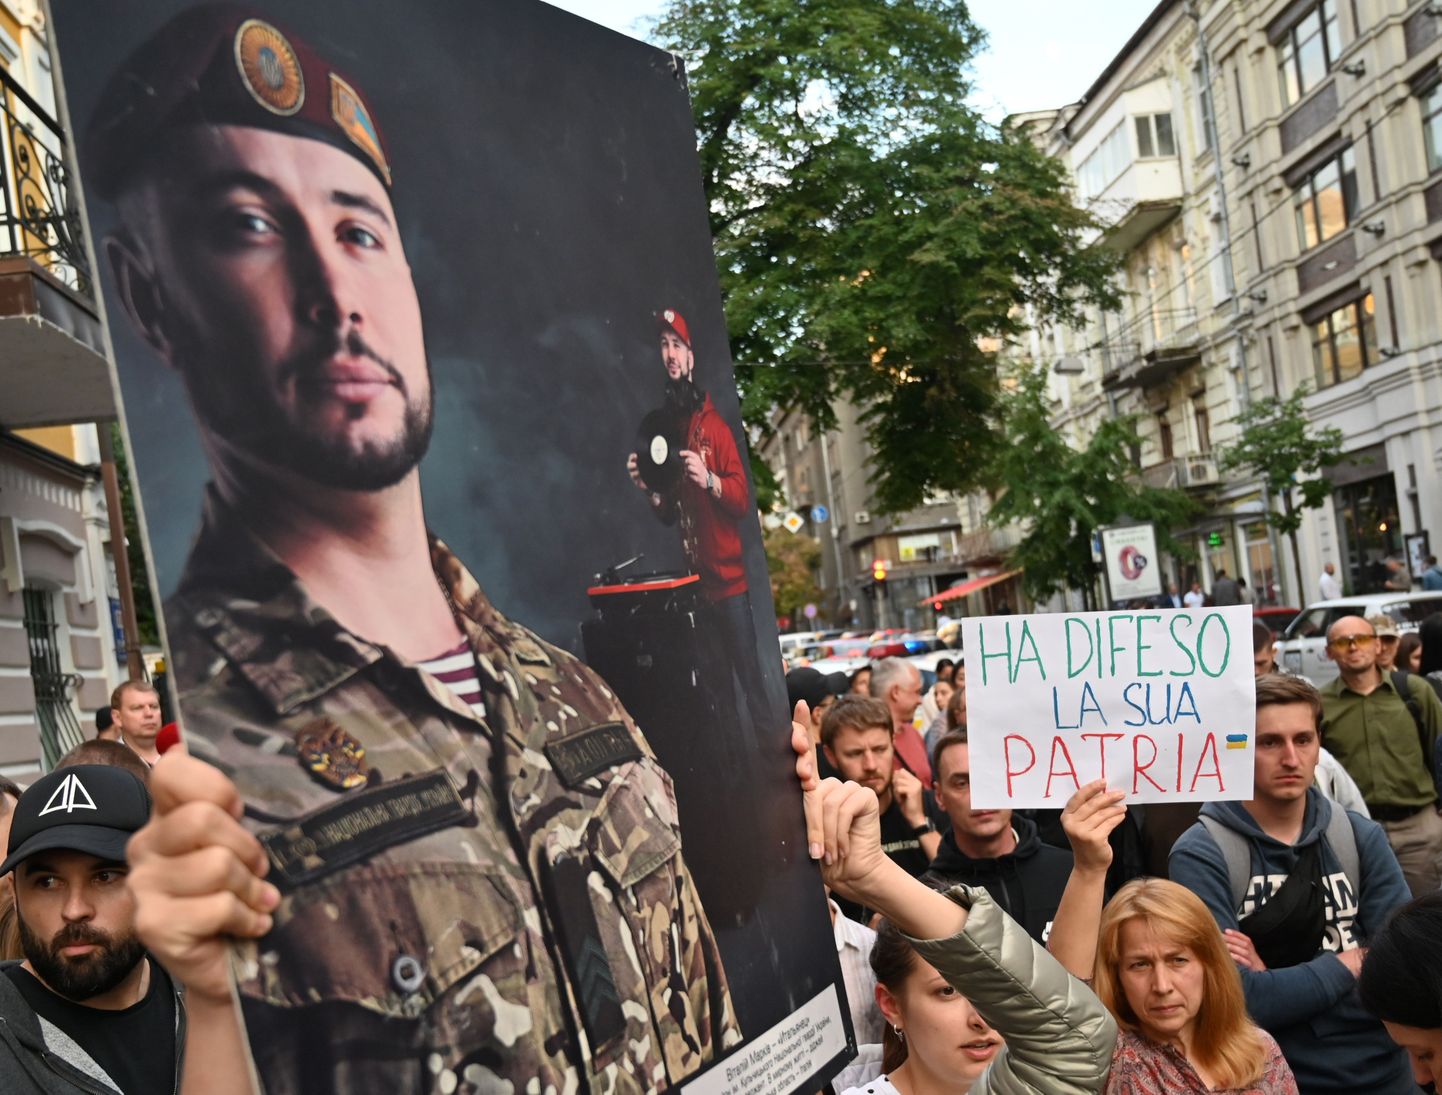 Aktivistid hoiavad pilti, millel kujutatakse Ukraina sõjaväelast Vitali Markivit, samal ajal avaldavad meelt,loosungitega "Vabastage Markiv!". Meeleavaldus toimus 2019. aastal Itaalias Kiievi saatkonna ees.